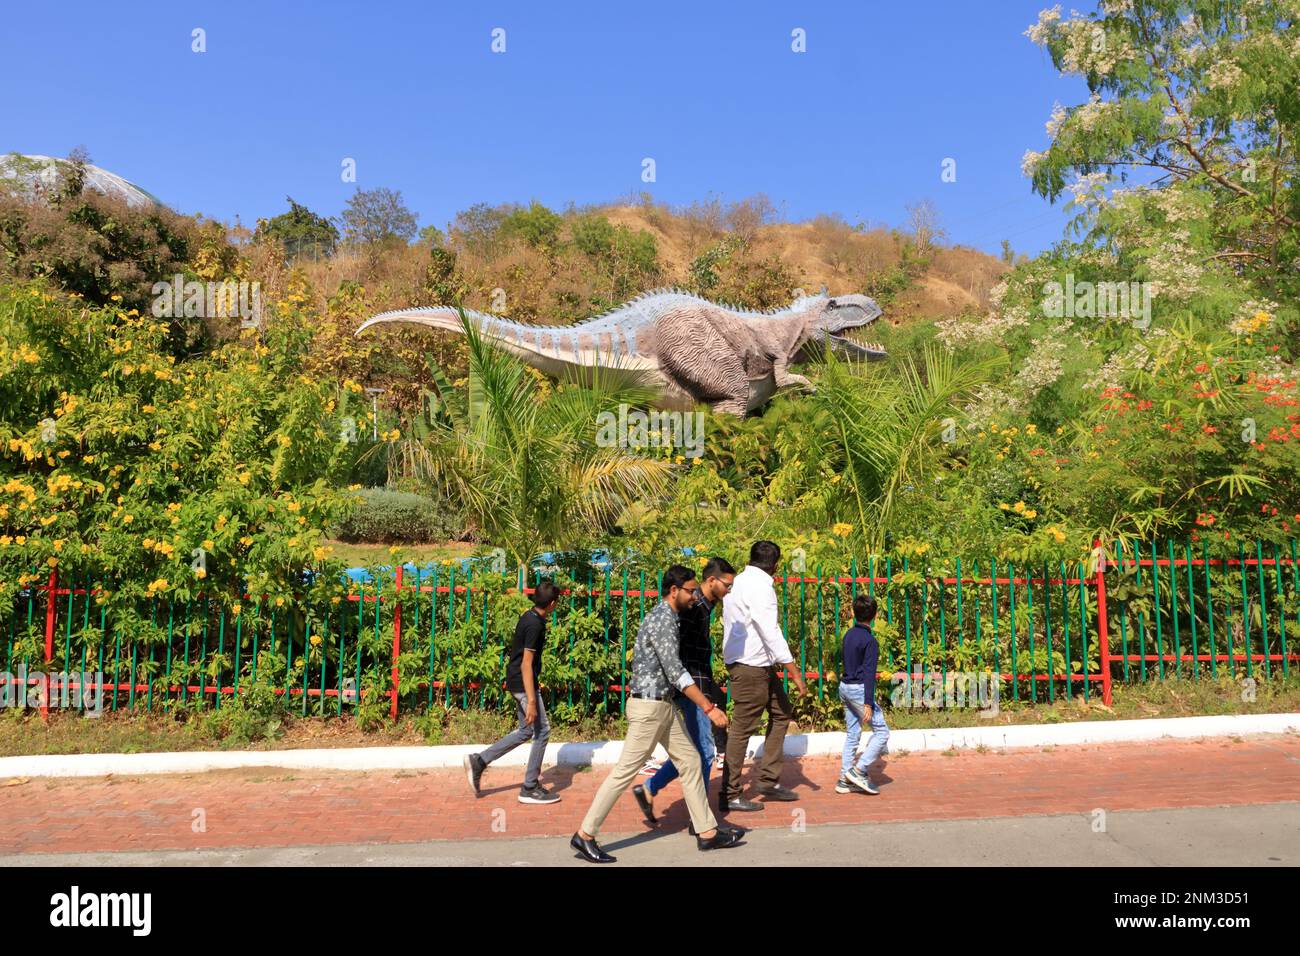 Dezember 23 2022 - Gujarat in Indien: Menschen vor dem Dinosaurierpark in der Nähe der Einheitsstatue und des Sardar-Sarovar-Staudamms Stockfoto